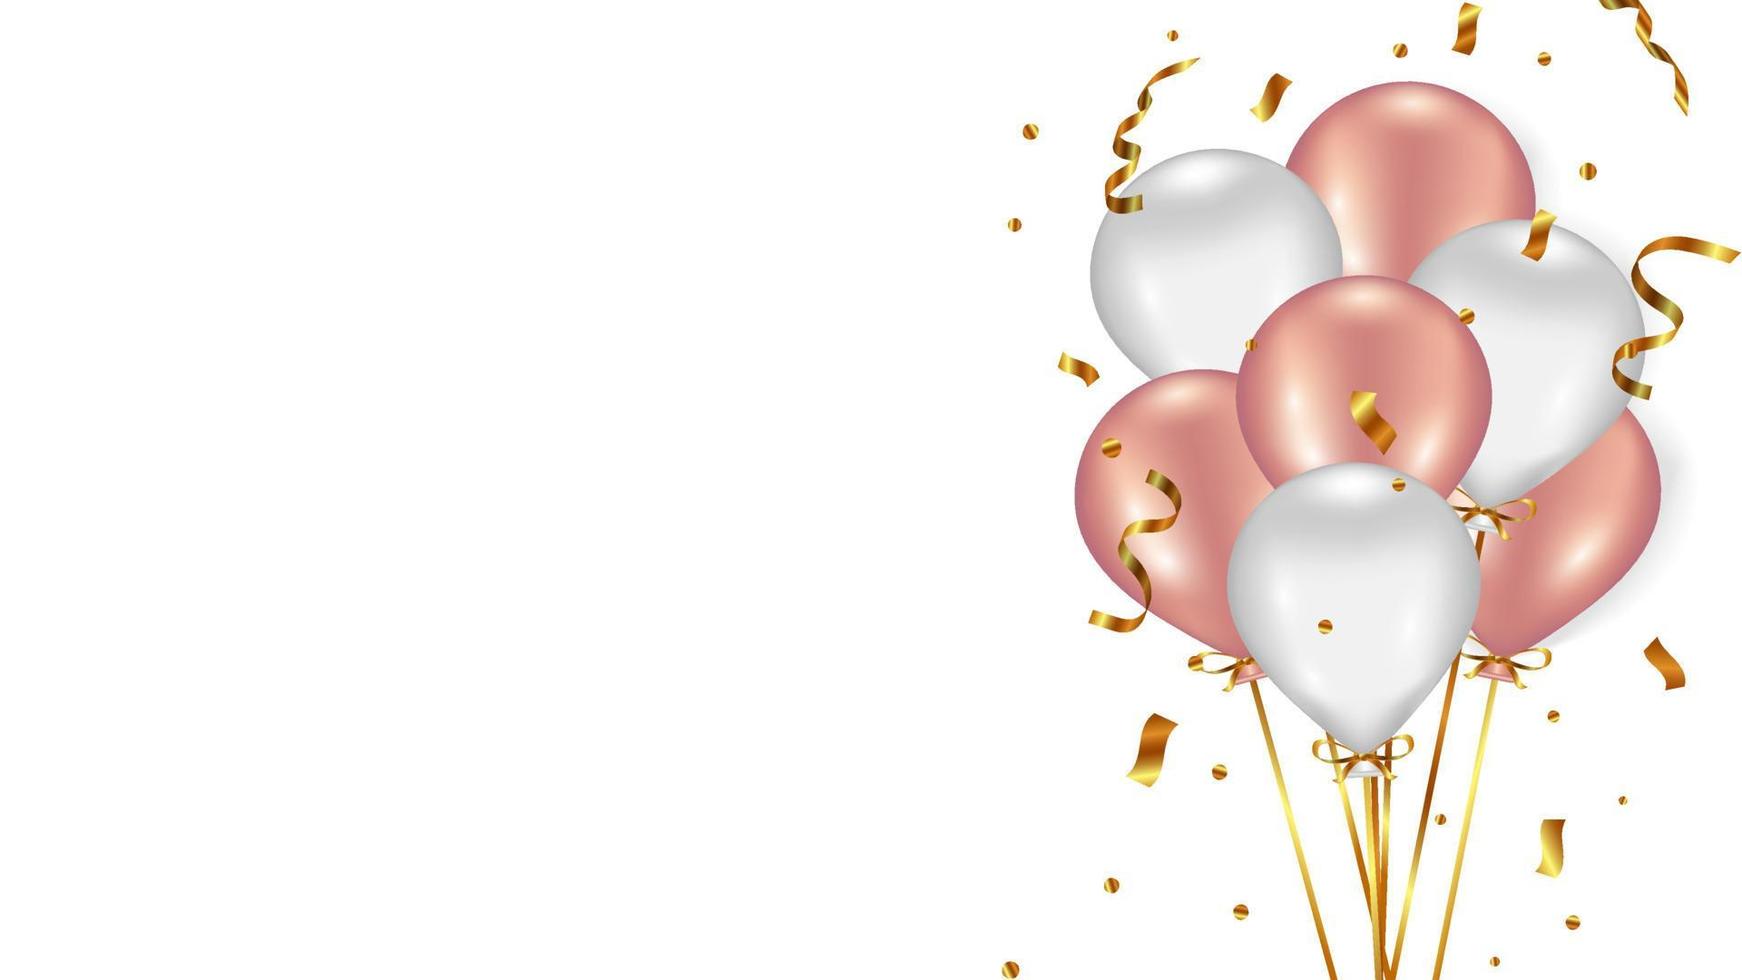 sfondo festivo con palloncini bianchi e rosa e serpentino dorato 5741647  Arte vettoriale a Vecteezy